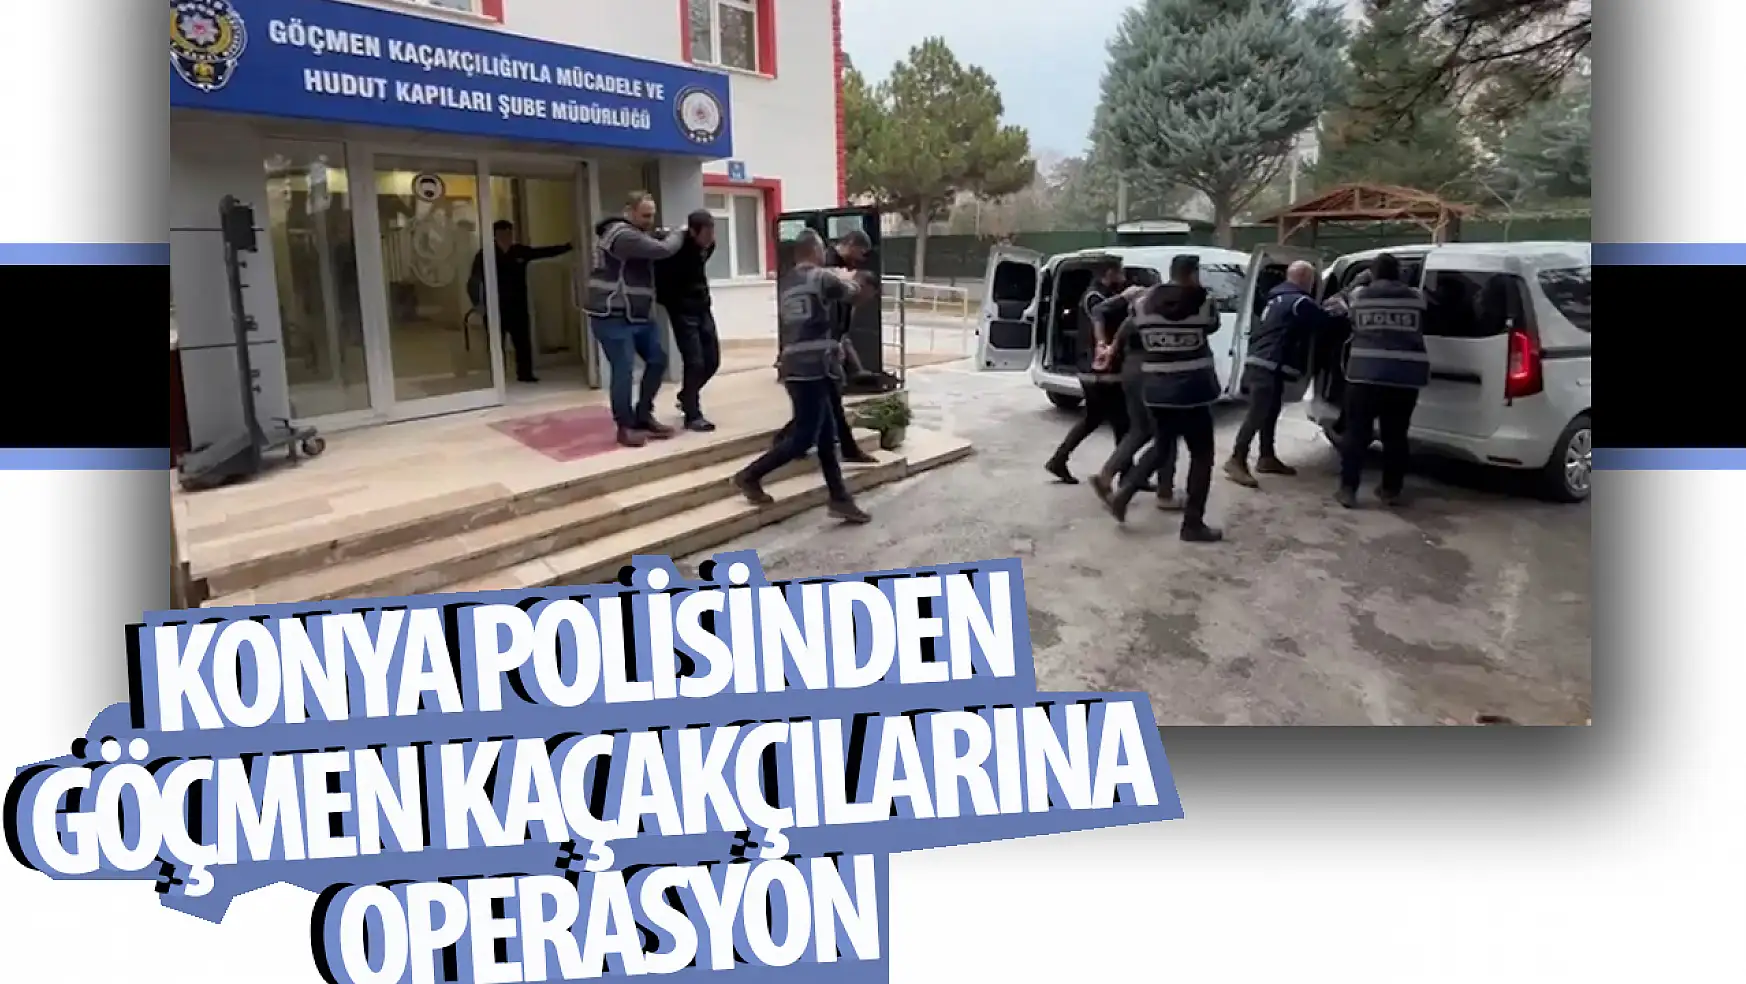 Konya polisinden göçmen kaçakçılarına  operasyon: 6 gözaltı!